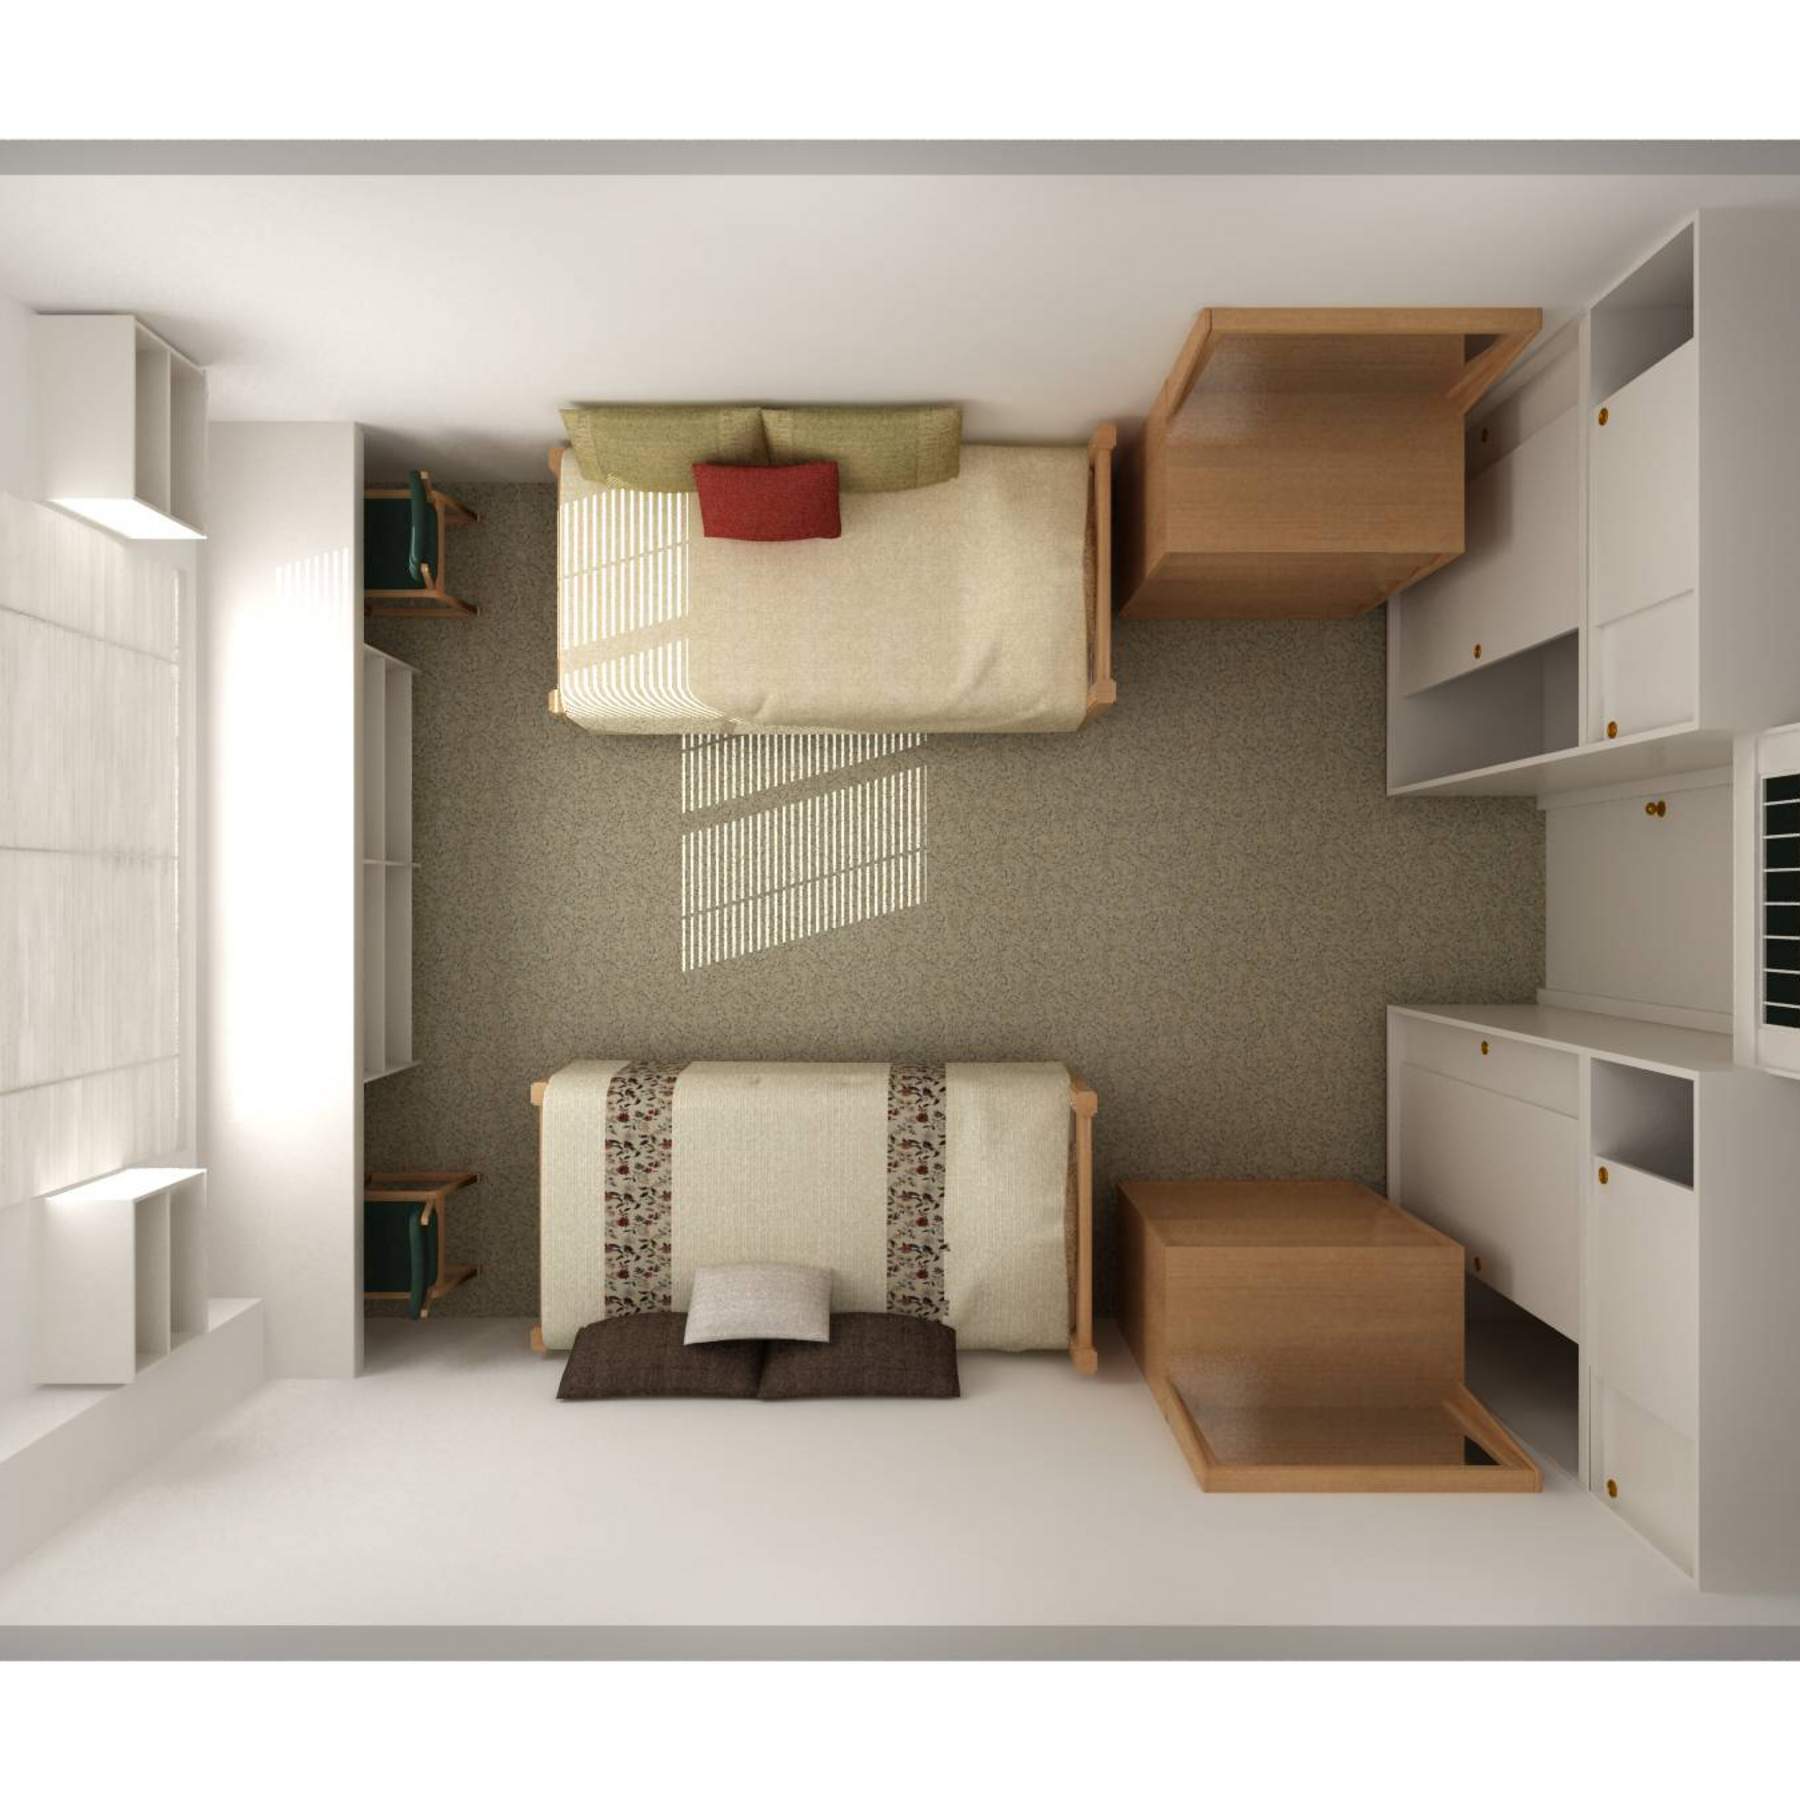 Lantana Hall double bedroom layout